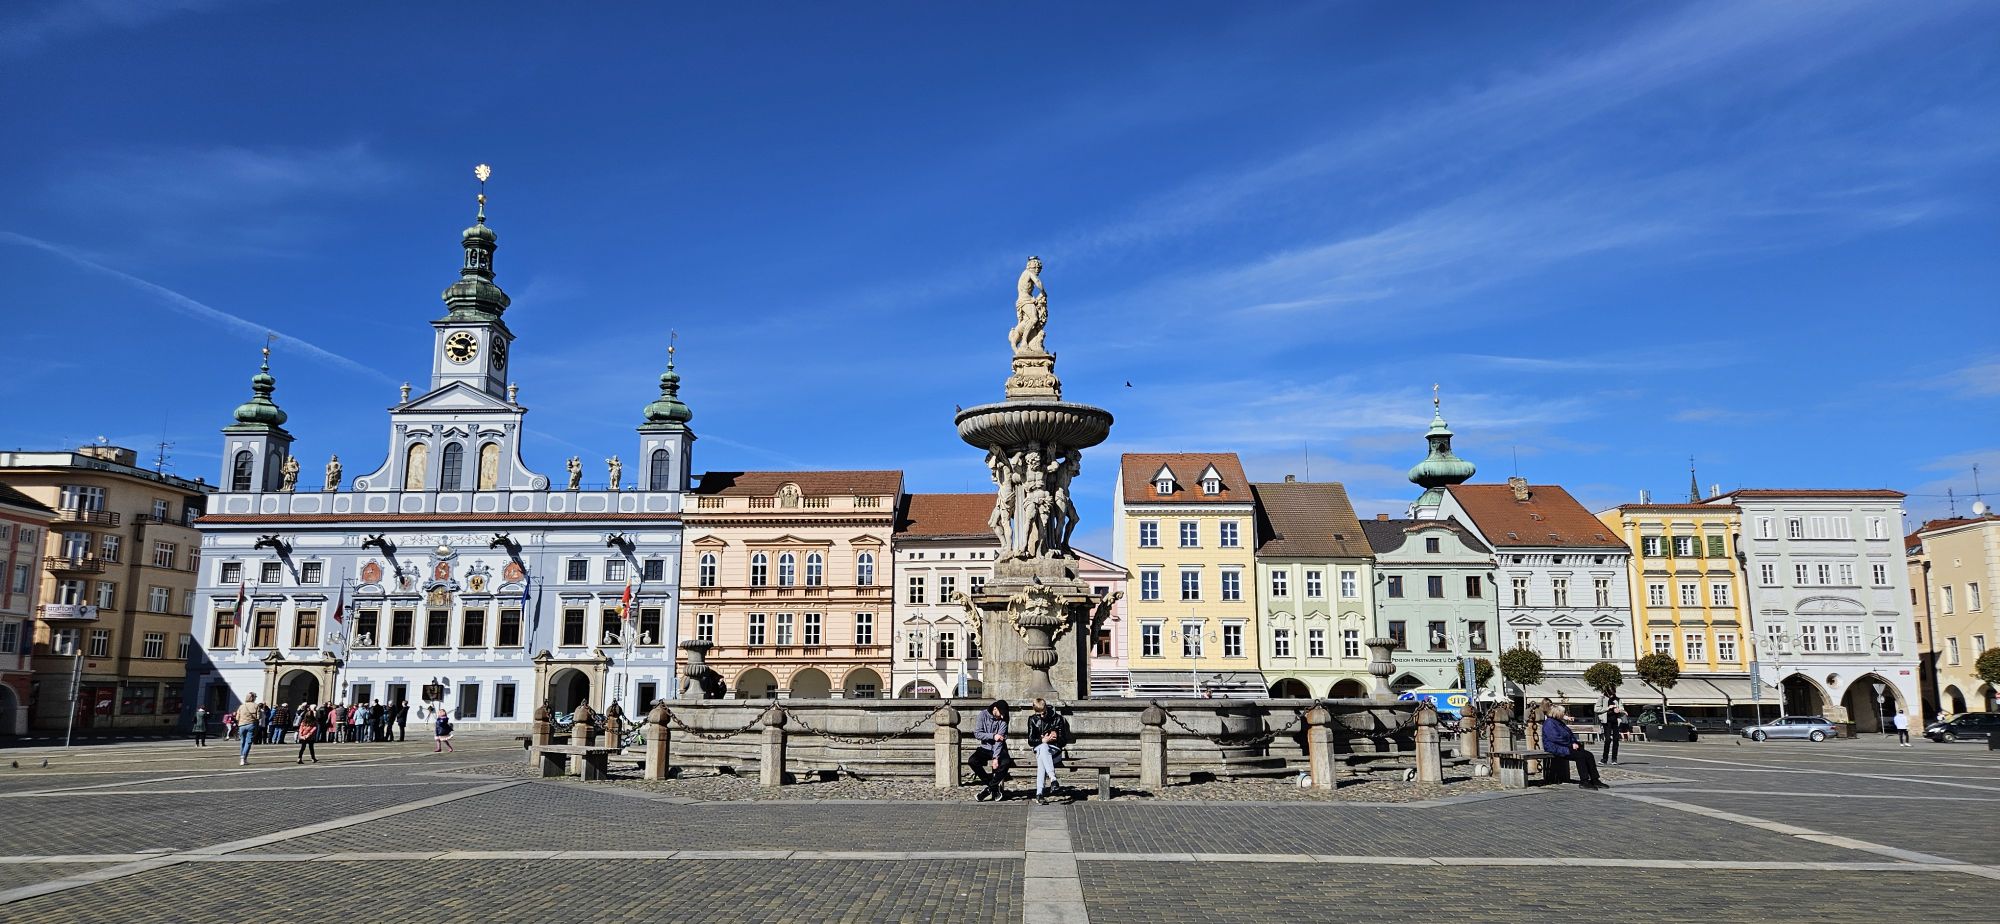 Old Town Square in České Budějovice